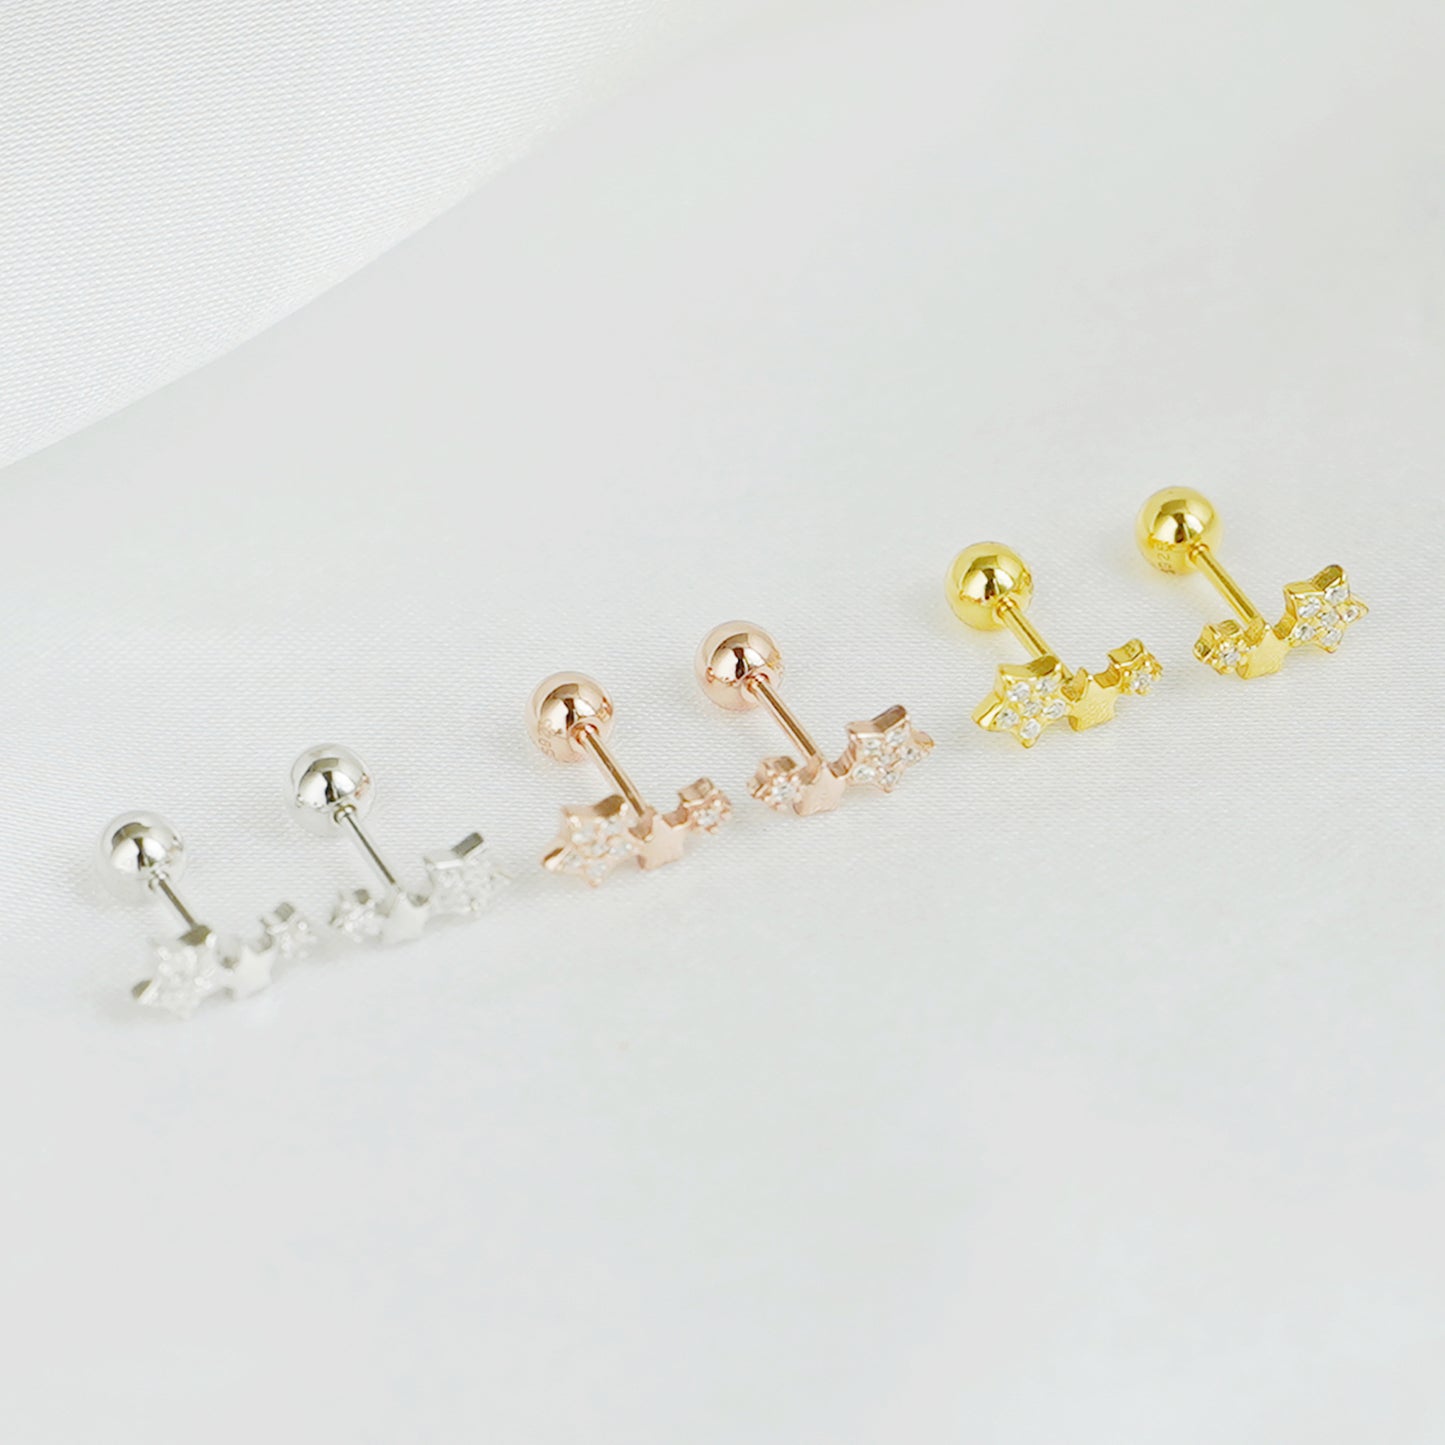 18K Gold Triple Star Stud Earrings with CZ Beads - sugarkittenlondon